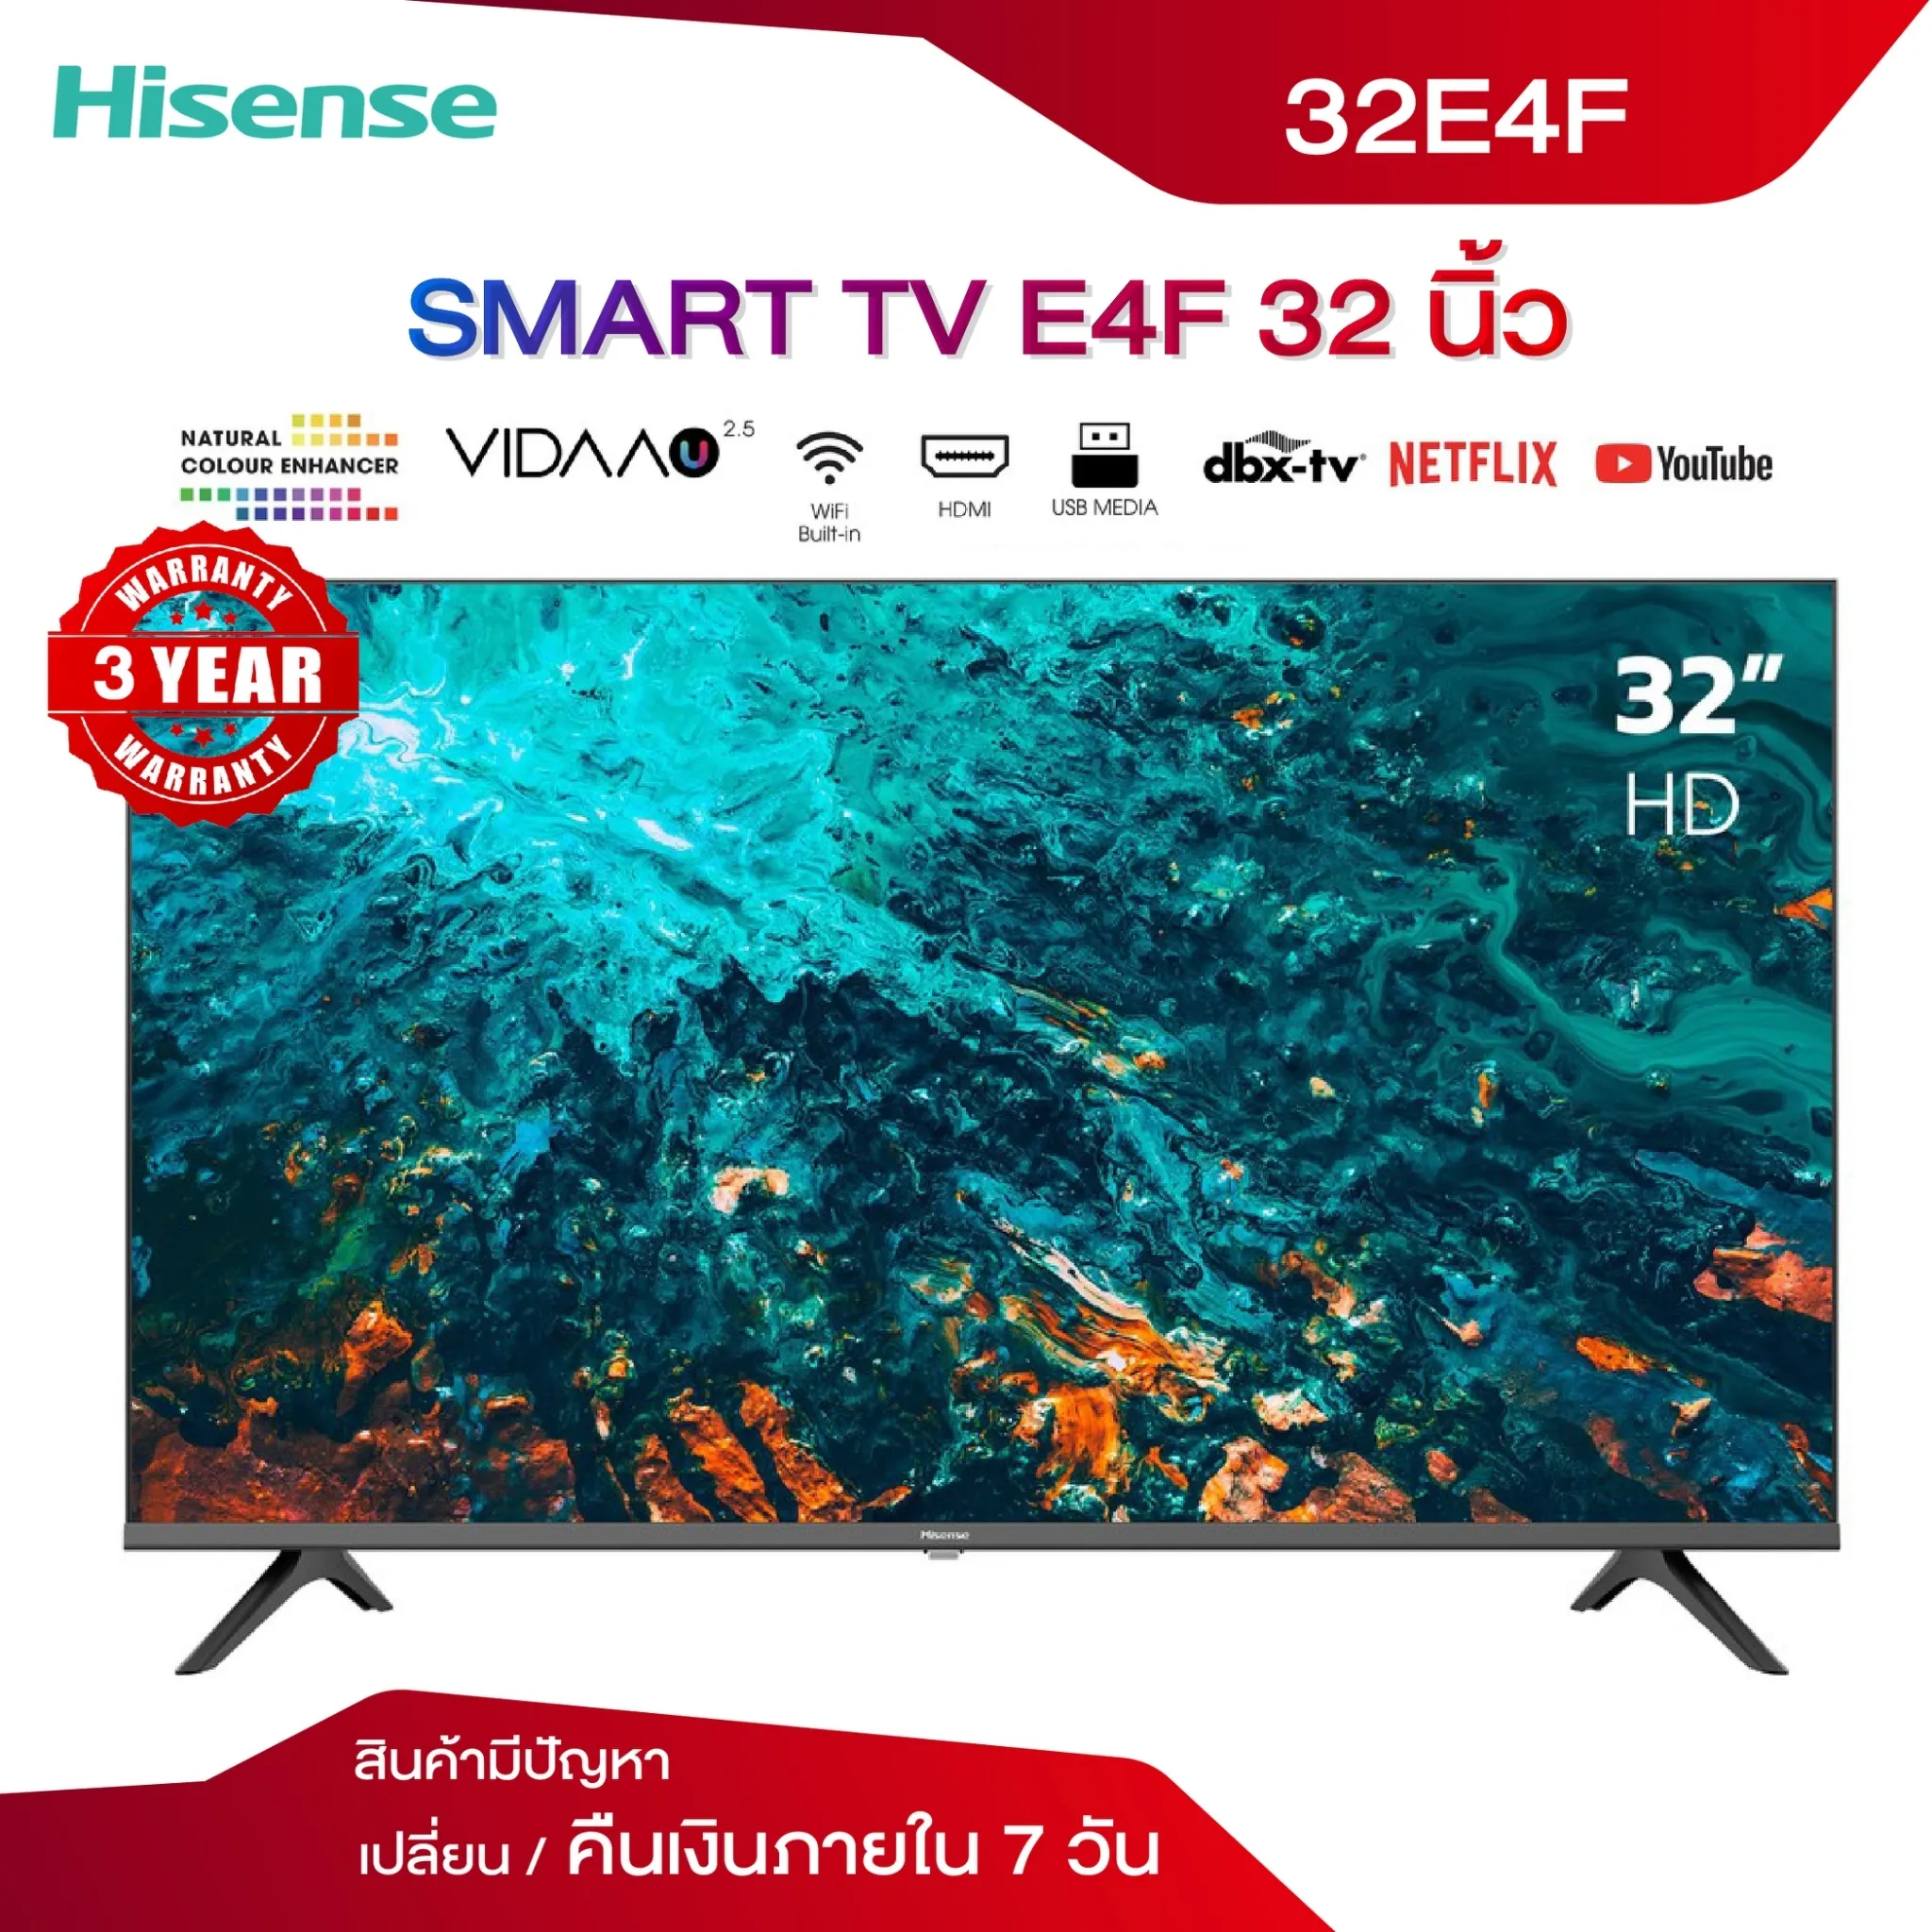 ทีวีดิจิตอล Hisense 32E4F HD ขนาด 32 นิ้ว สมาร์ททีวี เล่นยูทูป/เน็ตฟลิกซ์ Youtube/Netflix-DVB-T2/HDMI/USB/AV/WIFI ไวไฟ/LAN